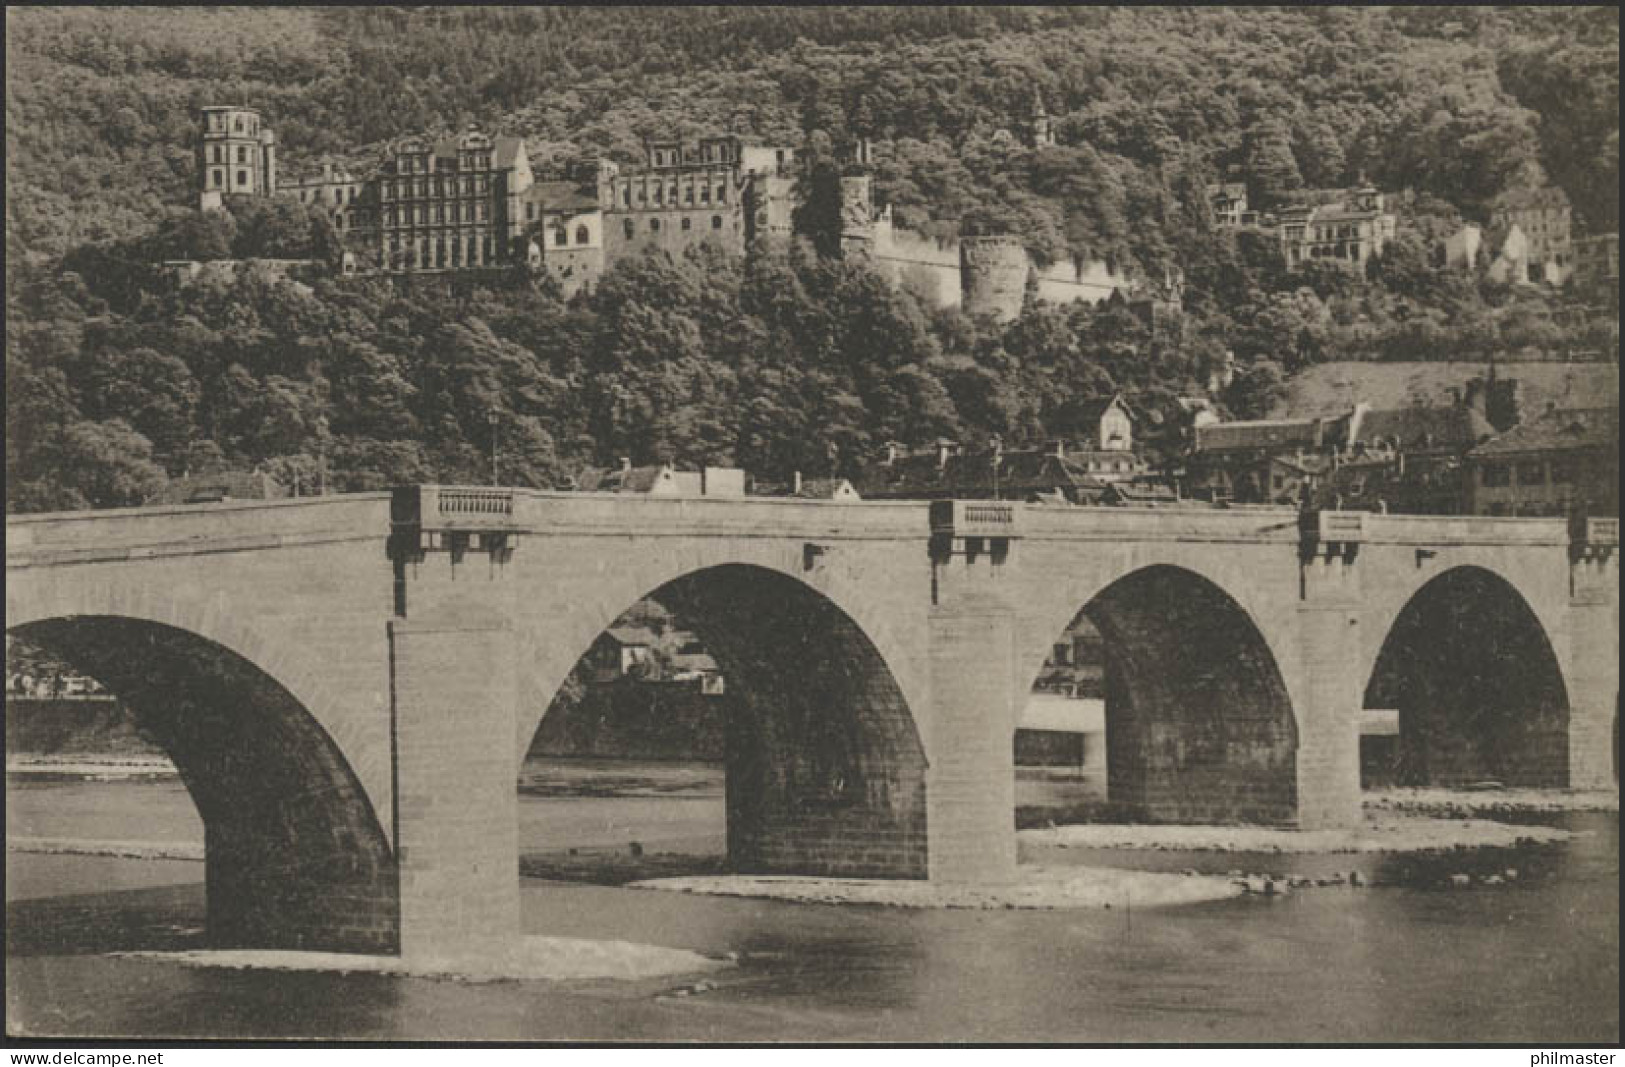 Ansichtskarte Feldpost Schloss Heidelberg Und Alte Neckarbrücke, 30.3.1915 - Besetzungen 1914-18